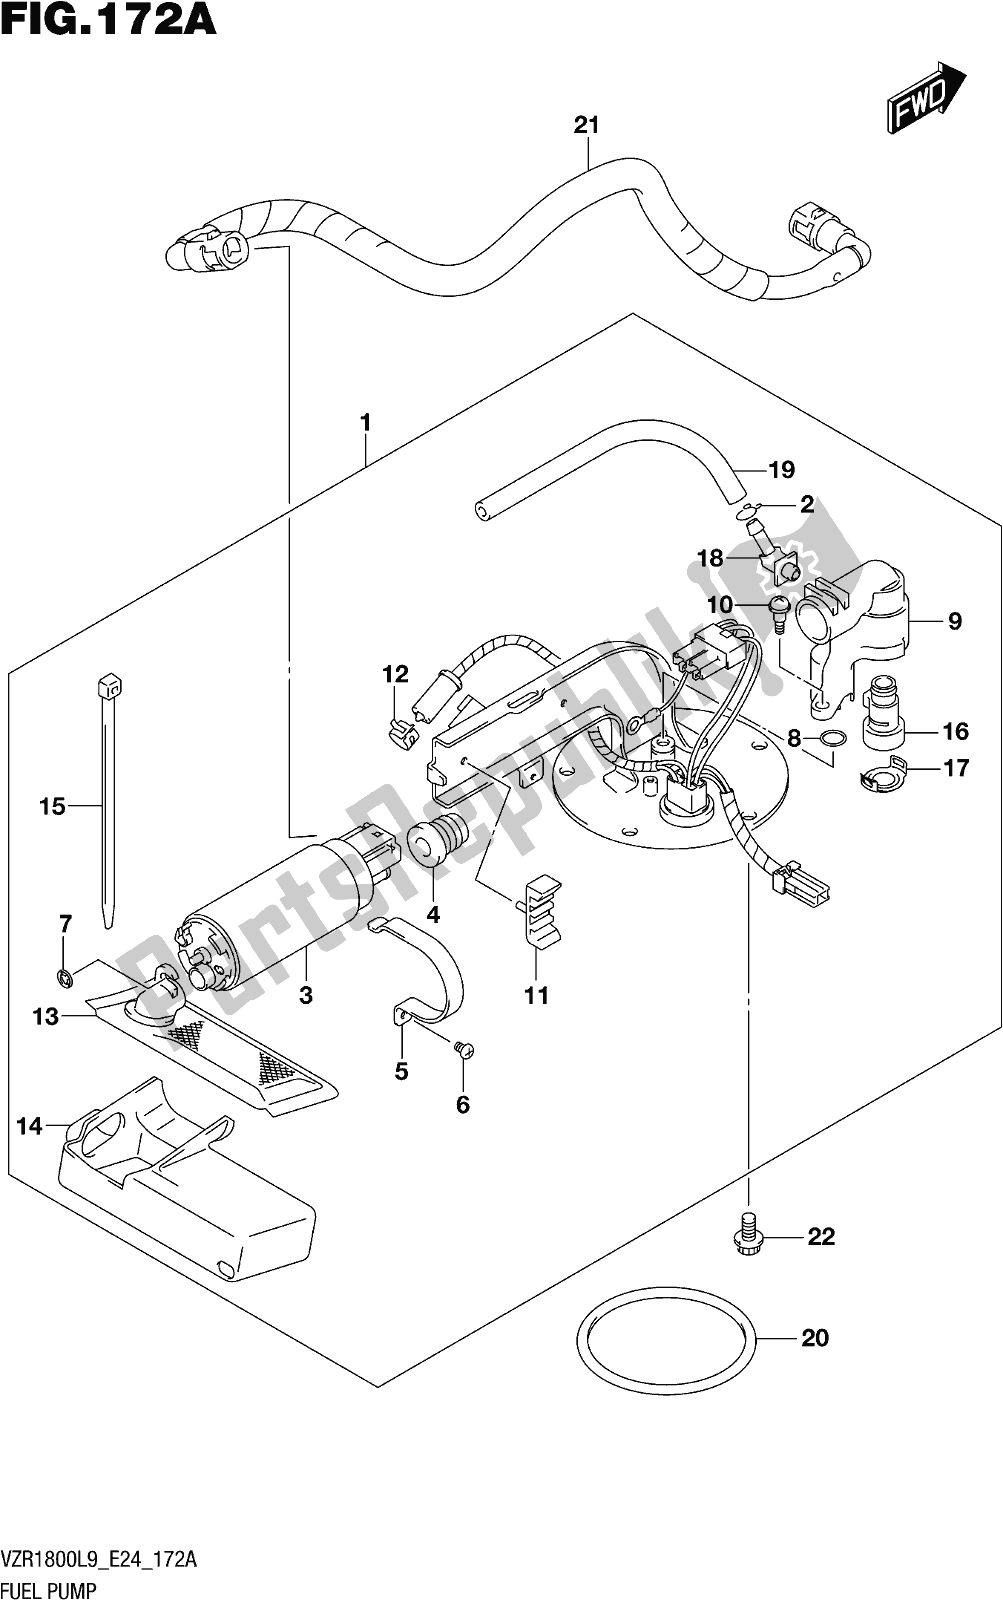 Alle onderdelen voor de Fig. 172a Fuel Pump van de Suzuki VZR 1800 BZ 2019